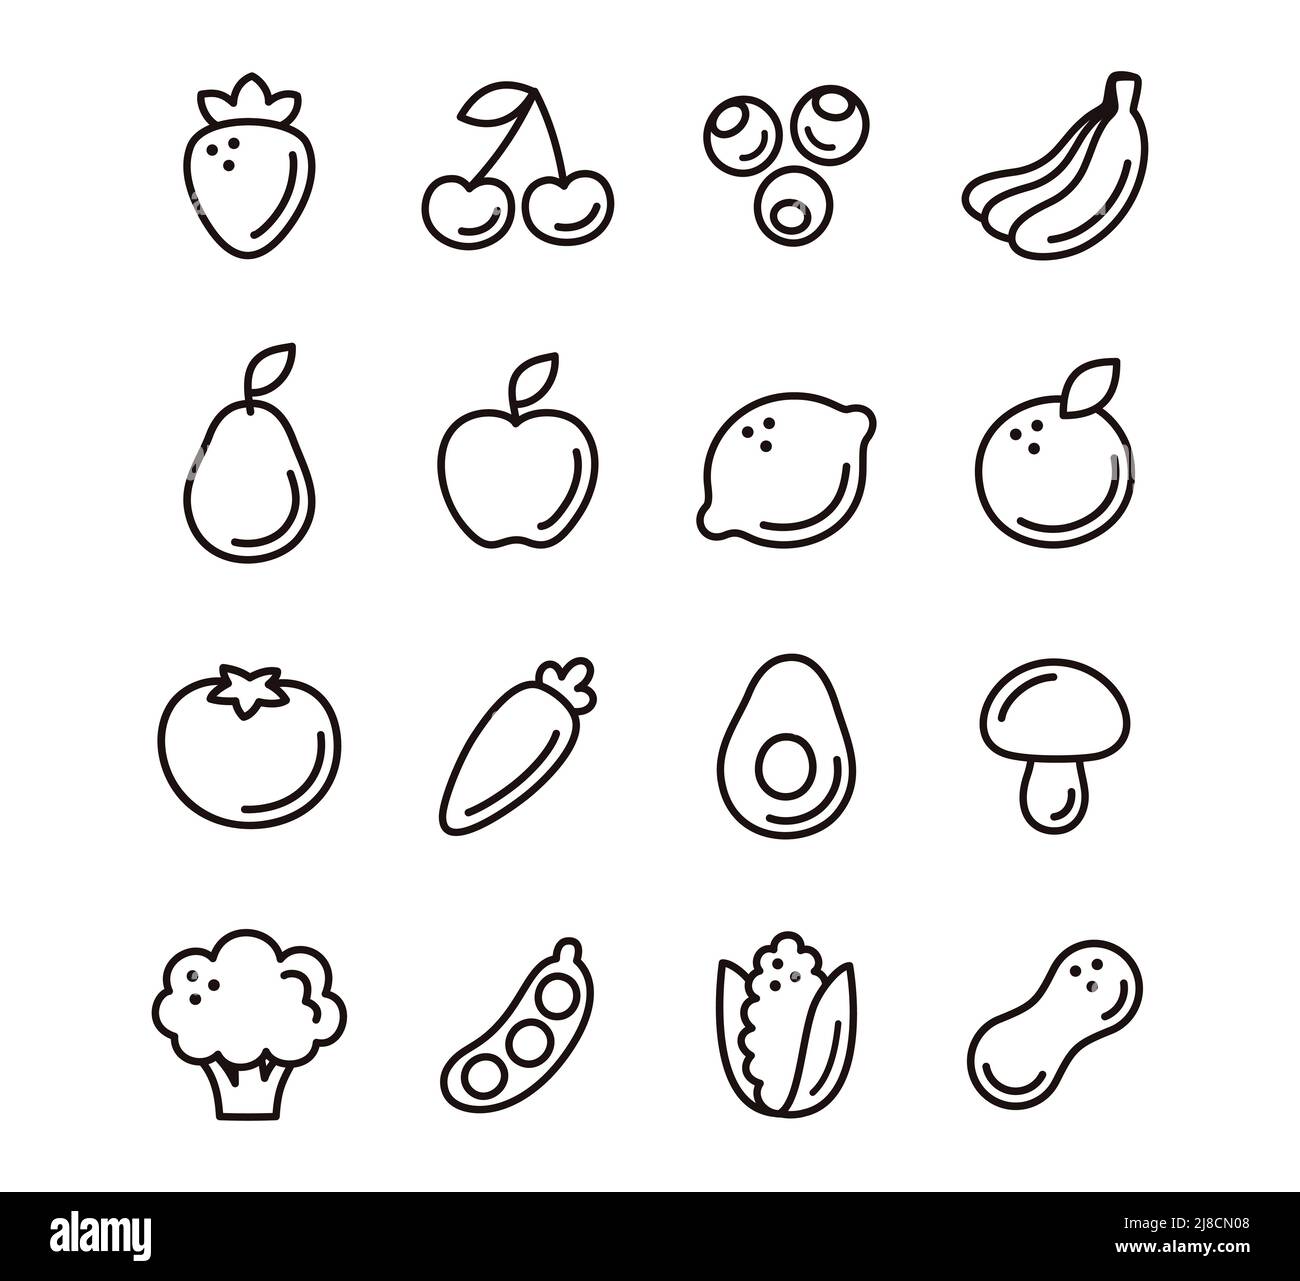 Dessins animés à la main, des icônes de fruits et de légumes. Dessin au trait noir et blanc. Pictogrammes simples mignons, jeu d'illustrations vectorielles. Illustration de Vecteur